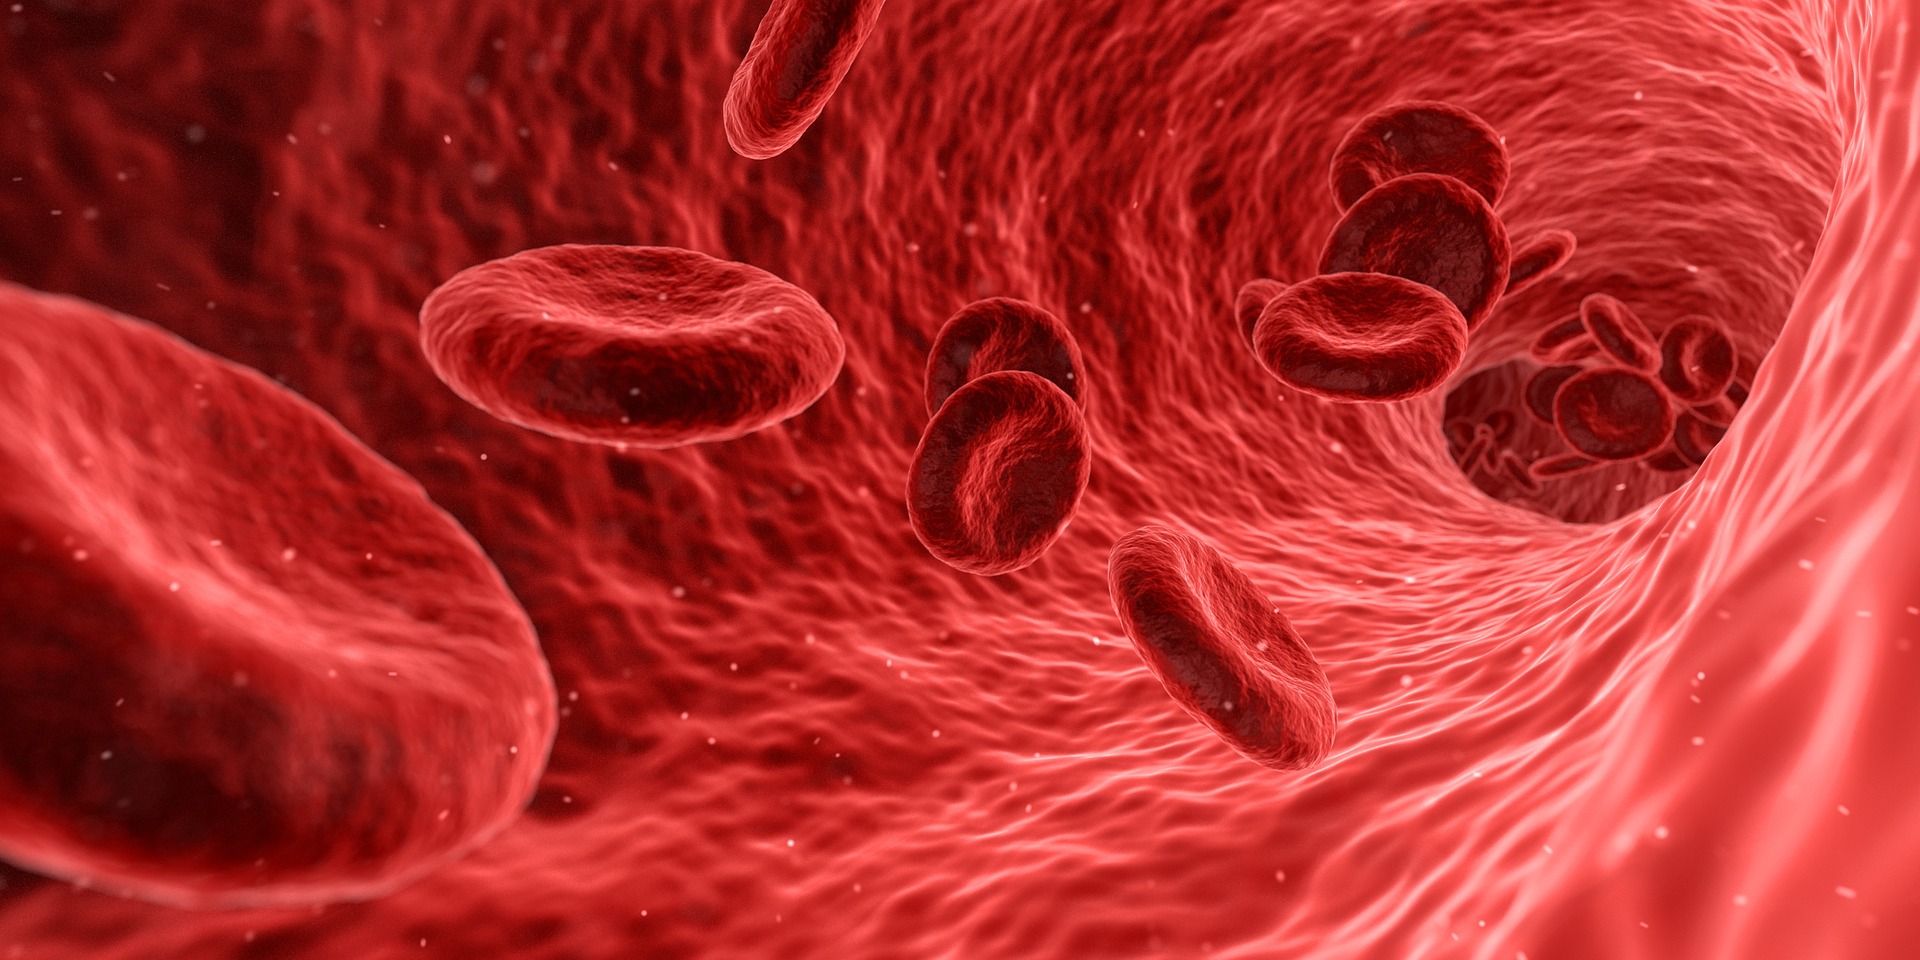 Natural Medicine - Blood Cells